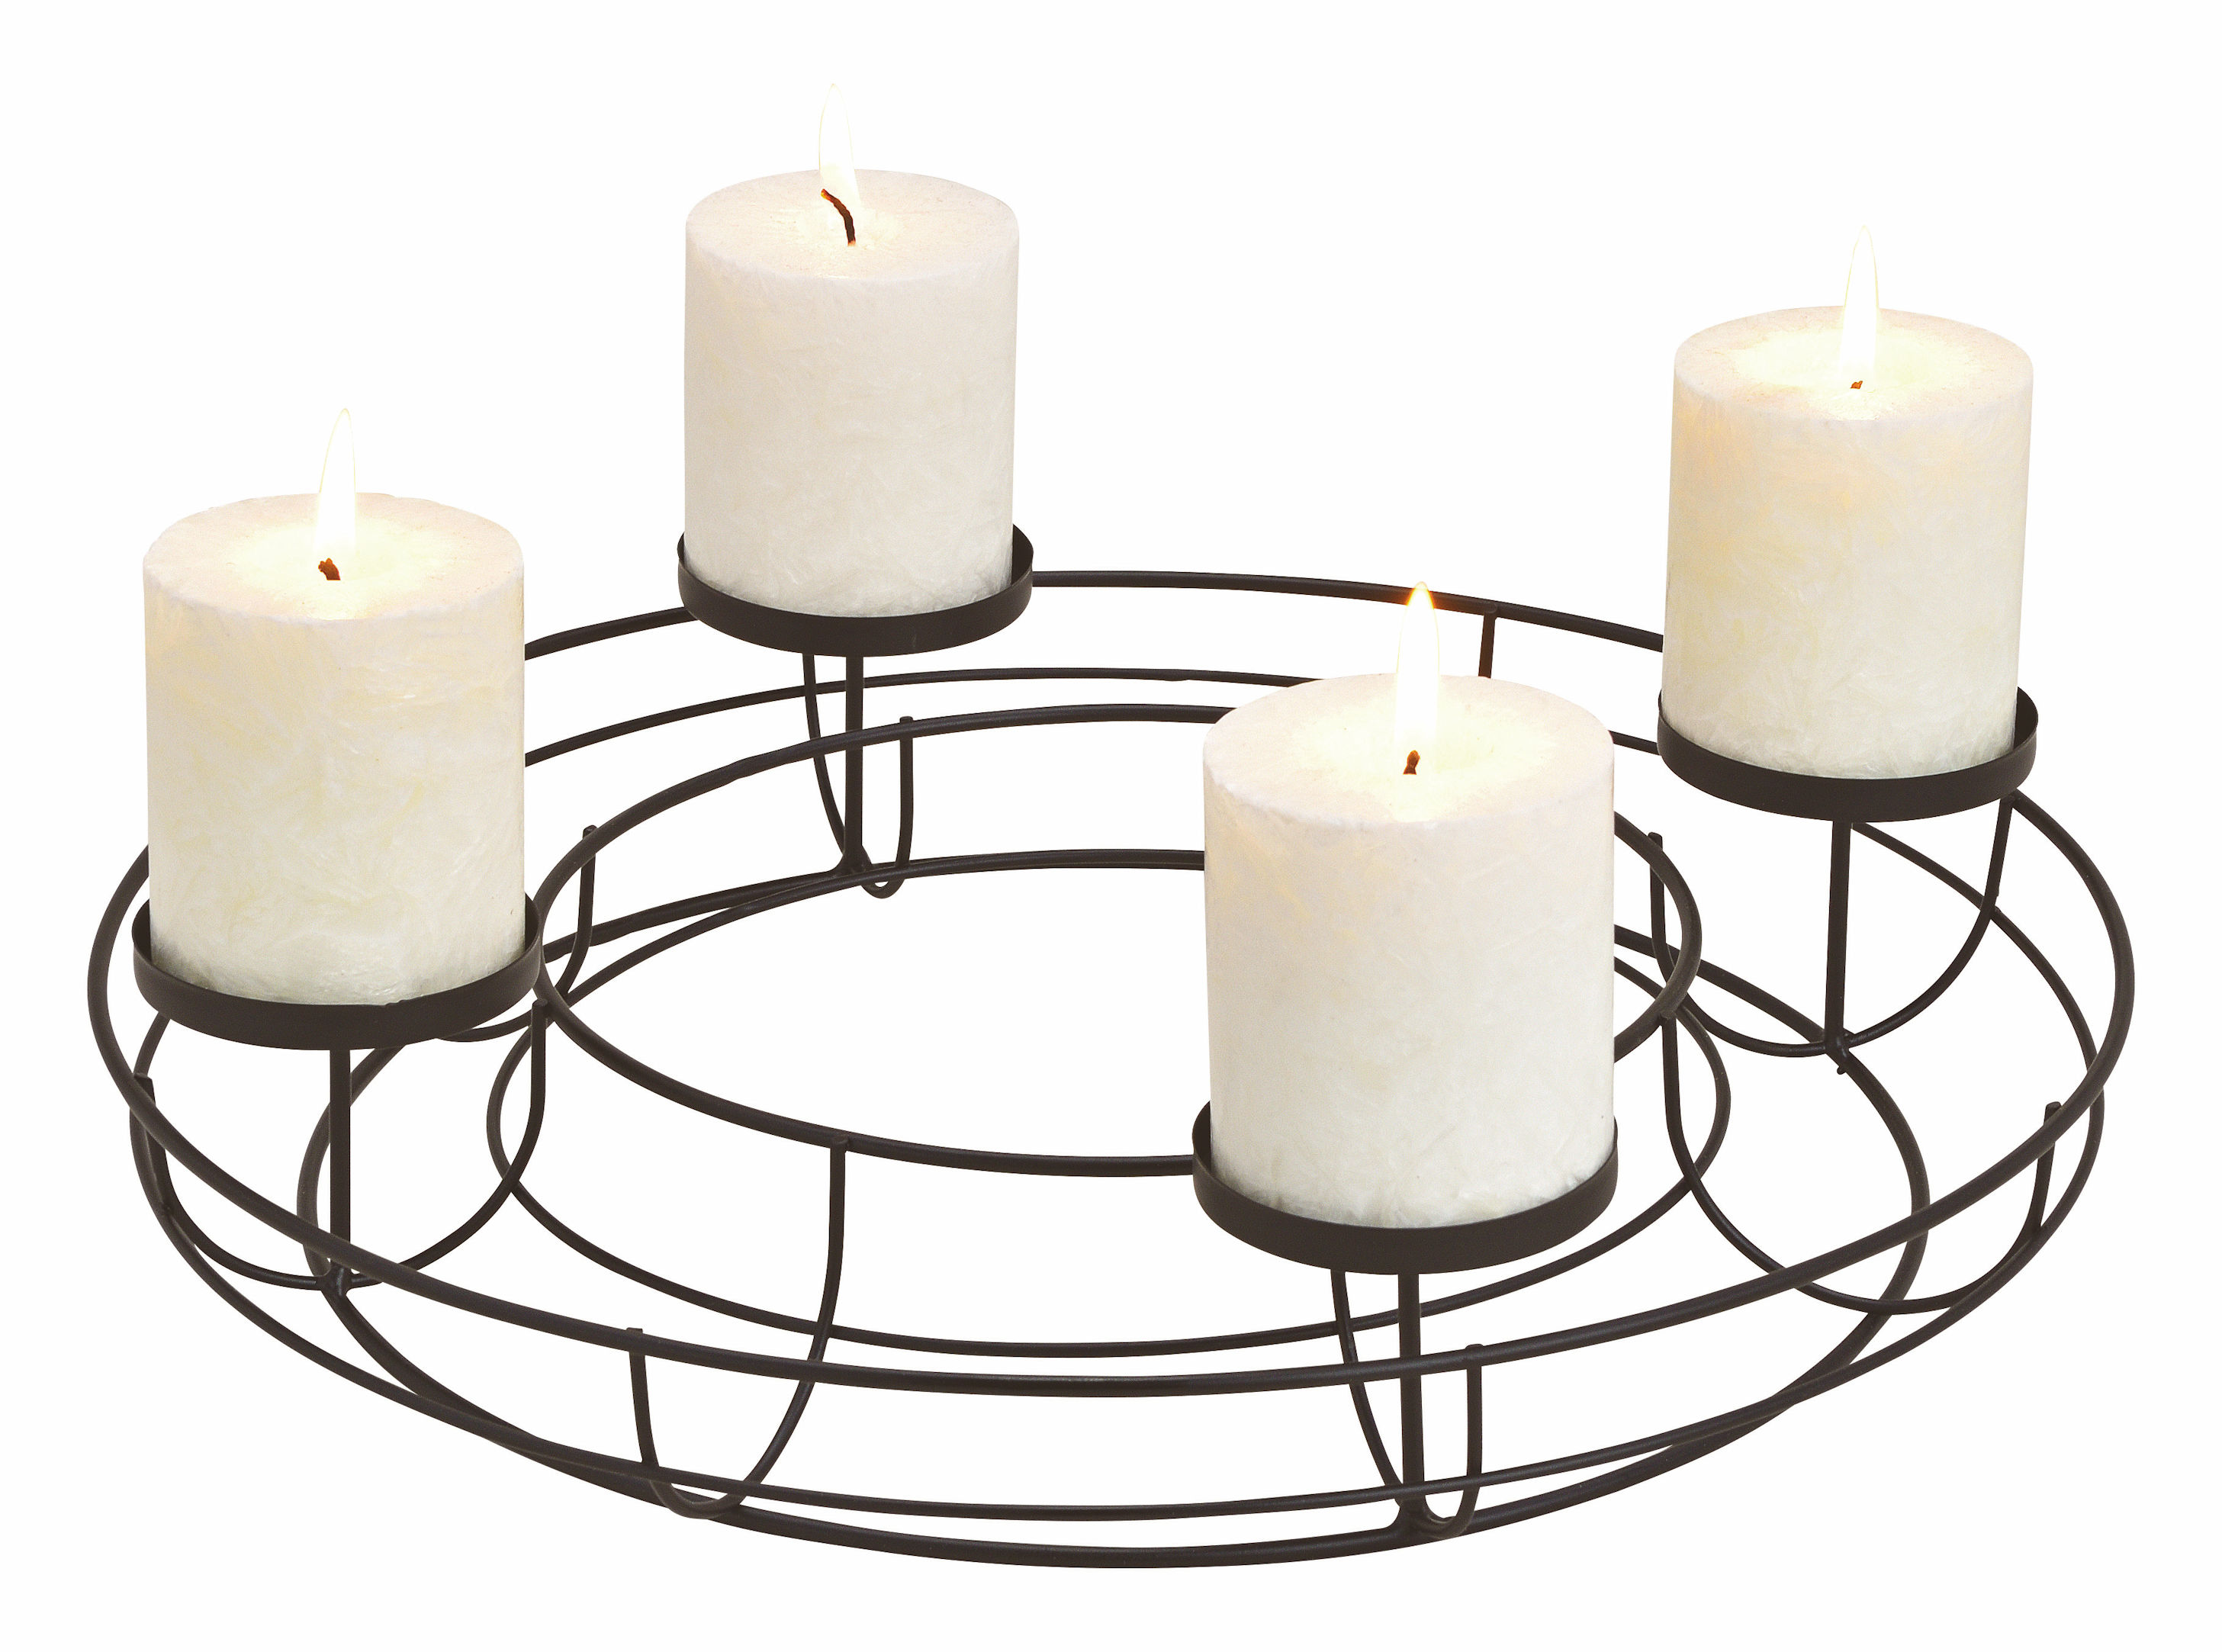 Adventskranz aus Metall in schwarz - Ø 38 cm - Kerzenhalter mit 4 Kerzentellern